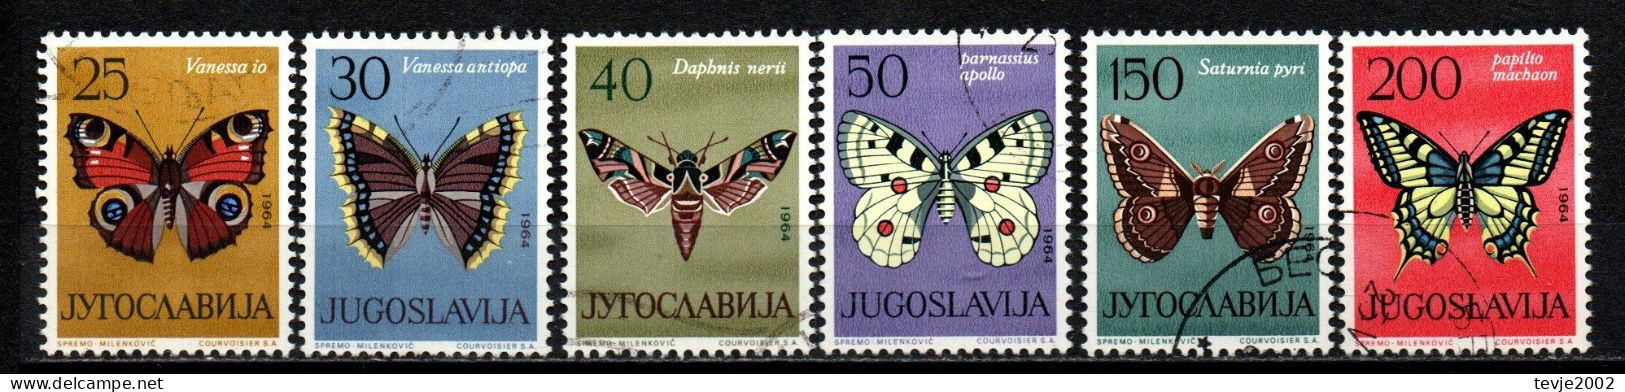 Jugoslawien 1964 - Mi.Nr. 1069 - 1074 - Gestempelt Used - Tiere Animals Schmetterlinge Butterflies - Mariposas